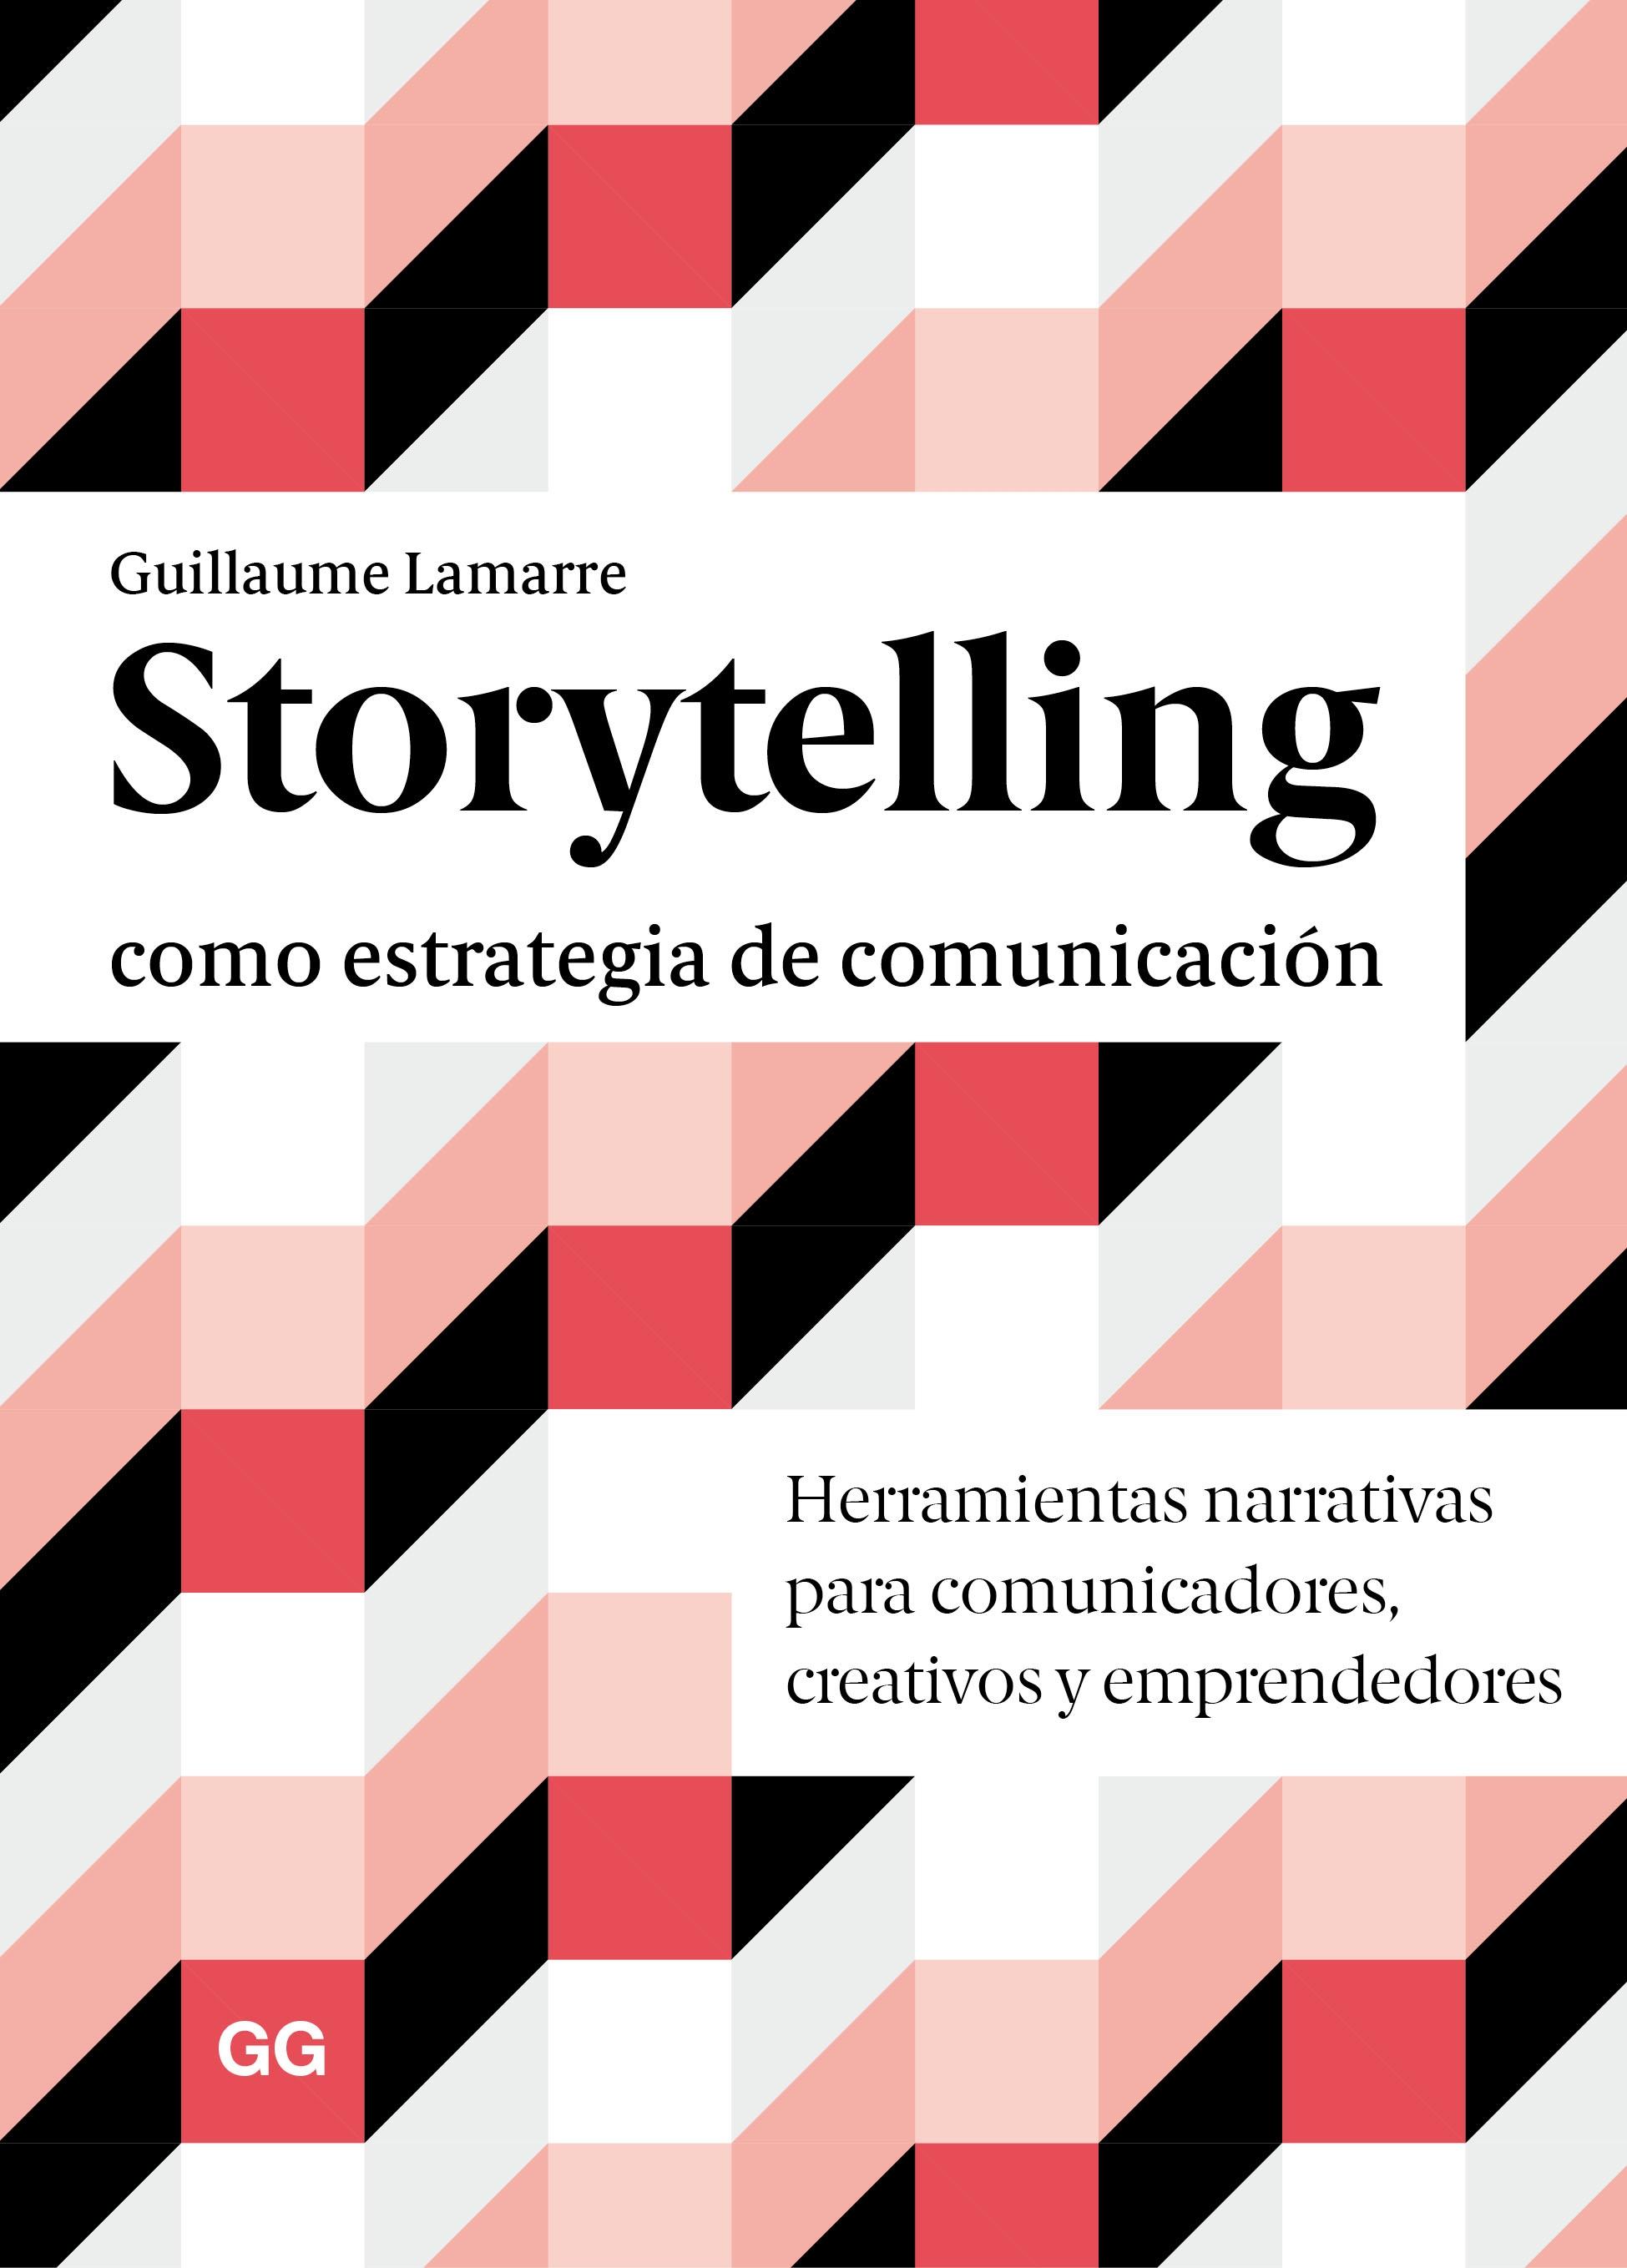 STORYTELLING COMO ESTRATEGIA DE COMUNICACIÓN "HERRAMIENTAS NARRATIVAS PARA COMUNICADORES, CREATIVOS Y EMPRENDEDORES"